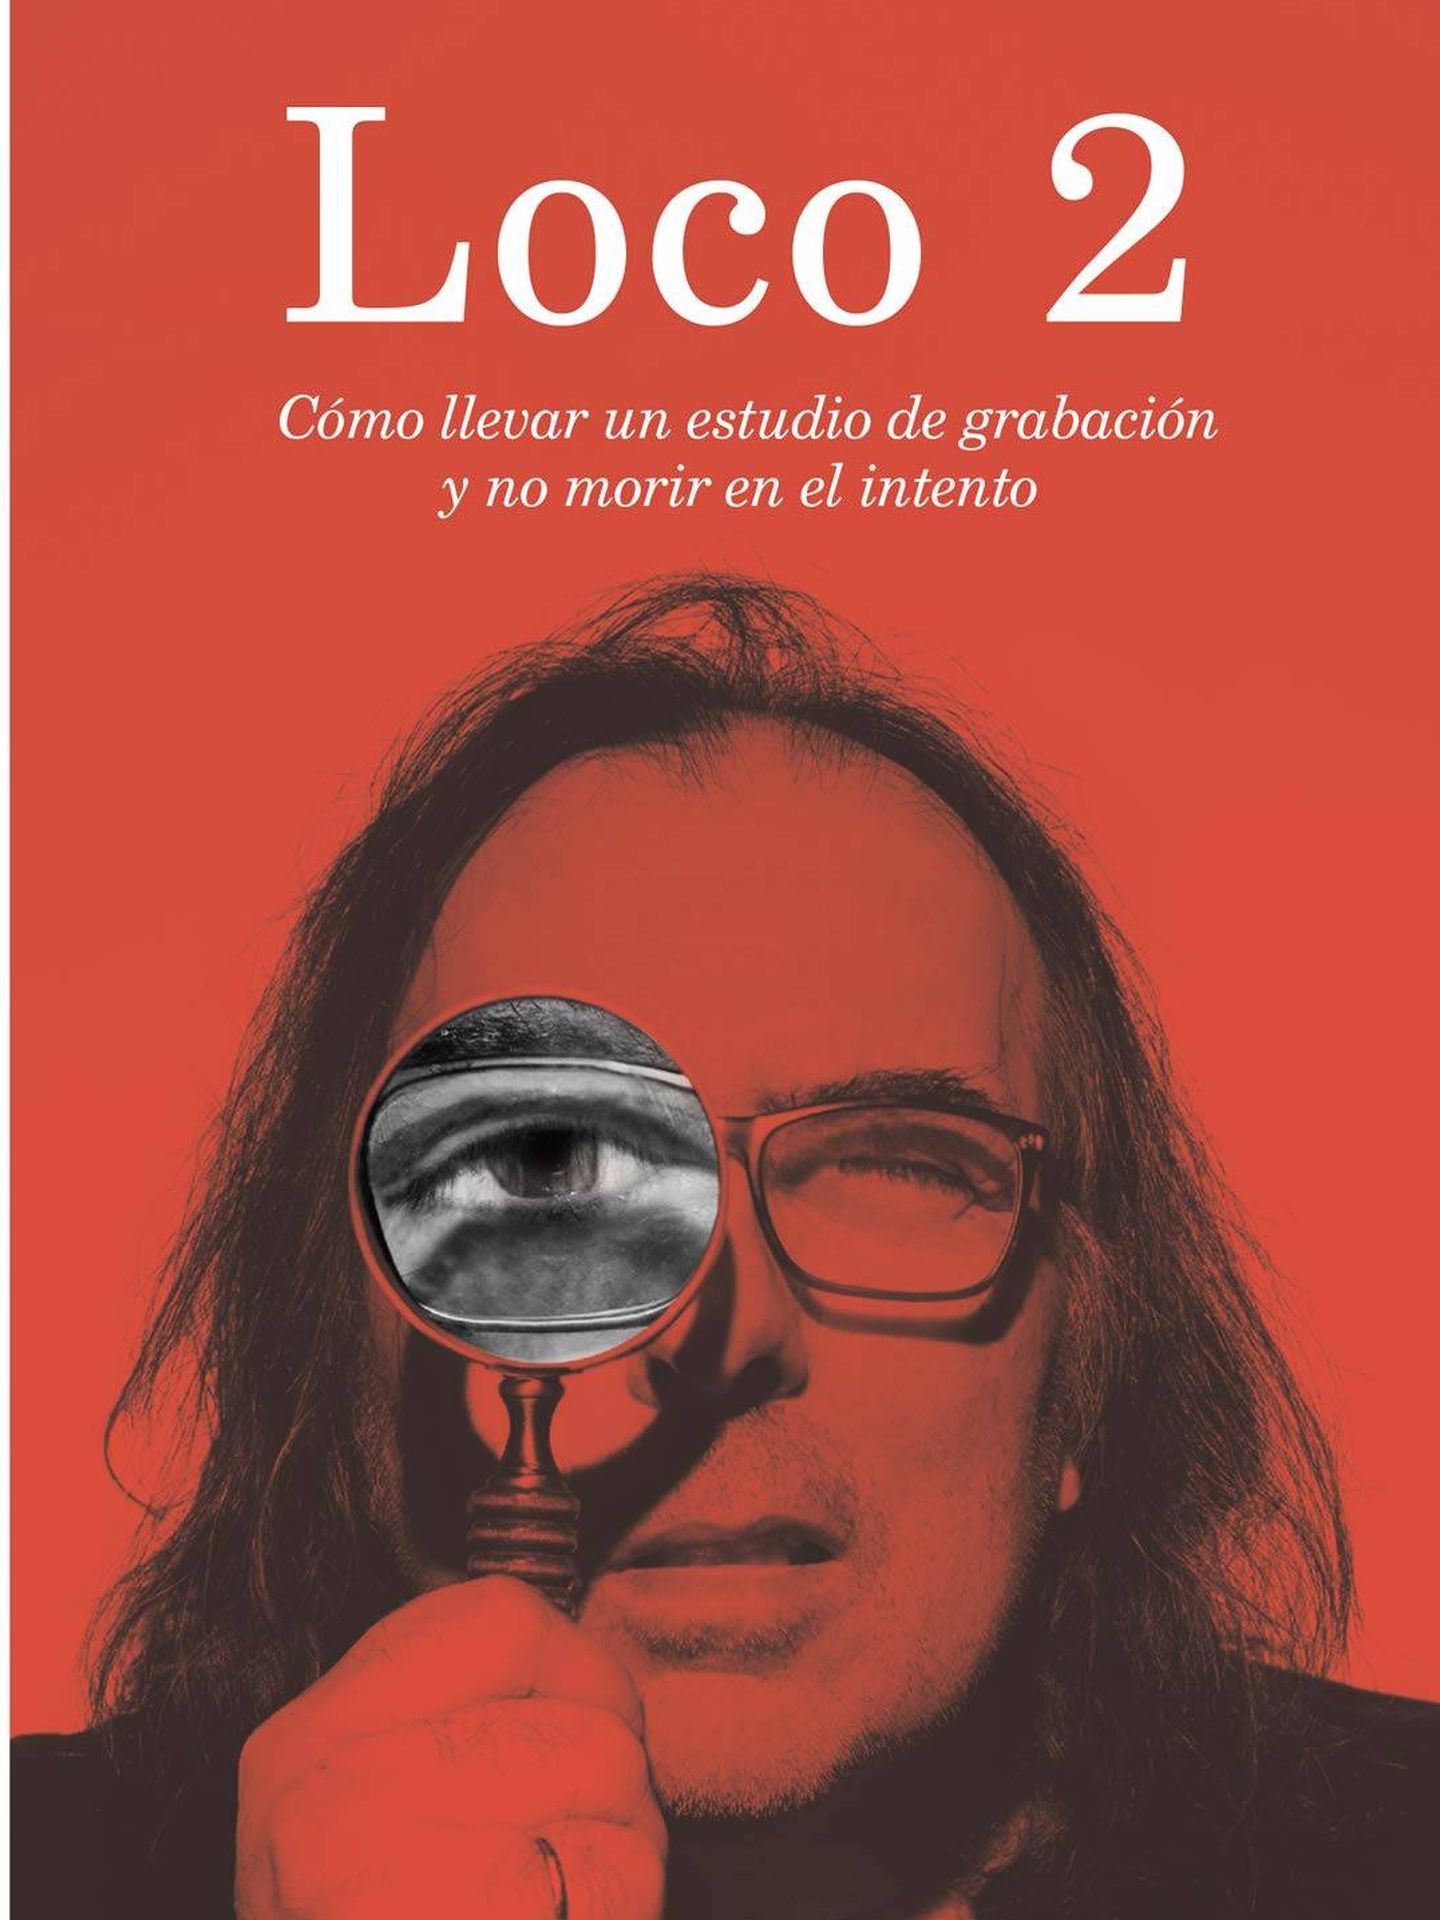 'Loco 2' El último libro de Paco Loco